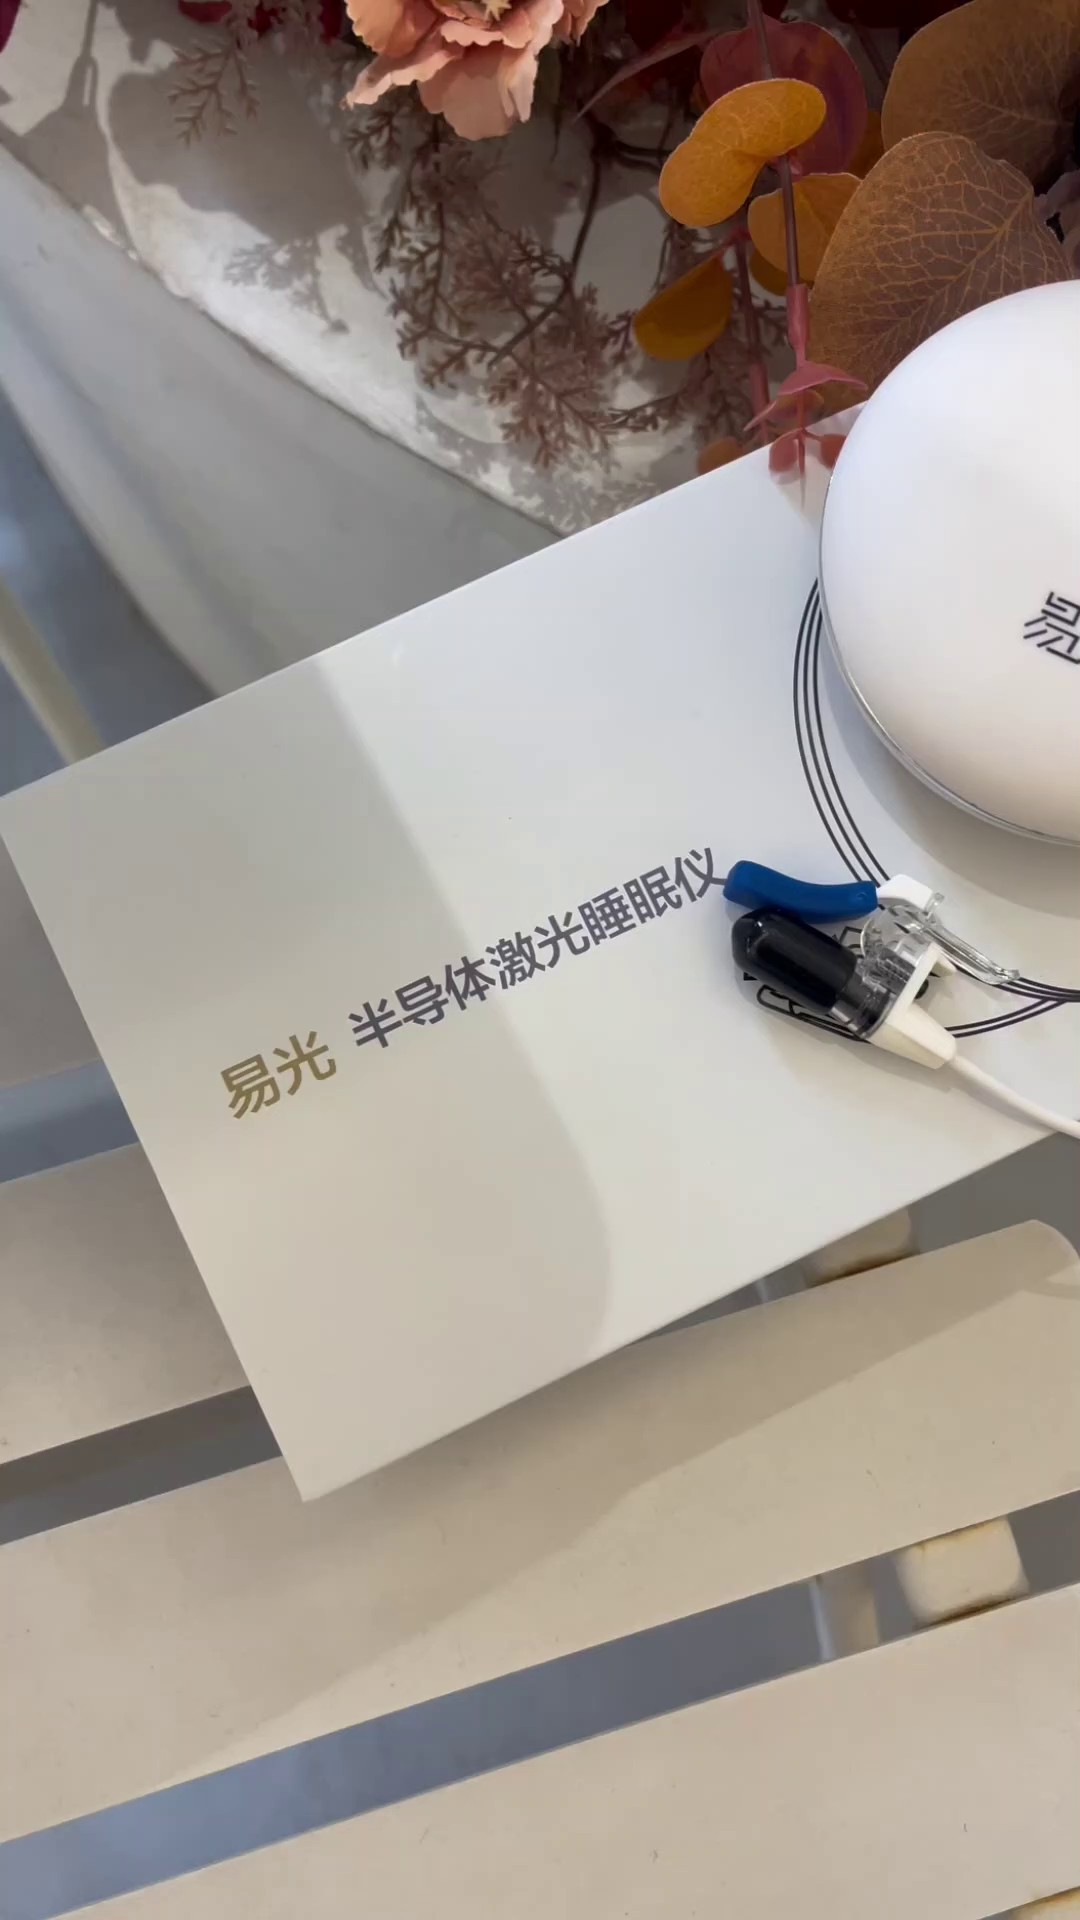 杭州推荐半导体激光睡眠仪销售电话,半导体激光睡眠仪